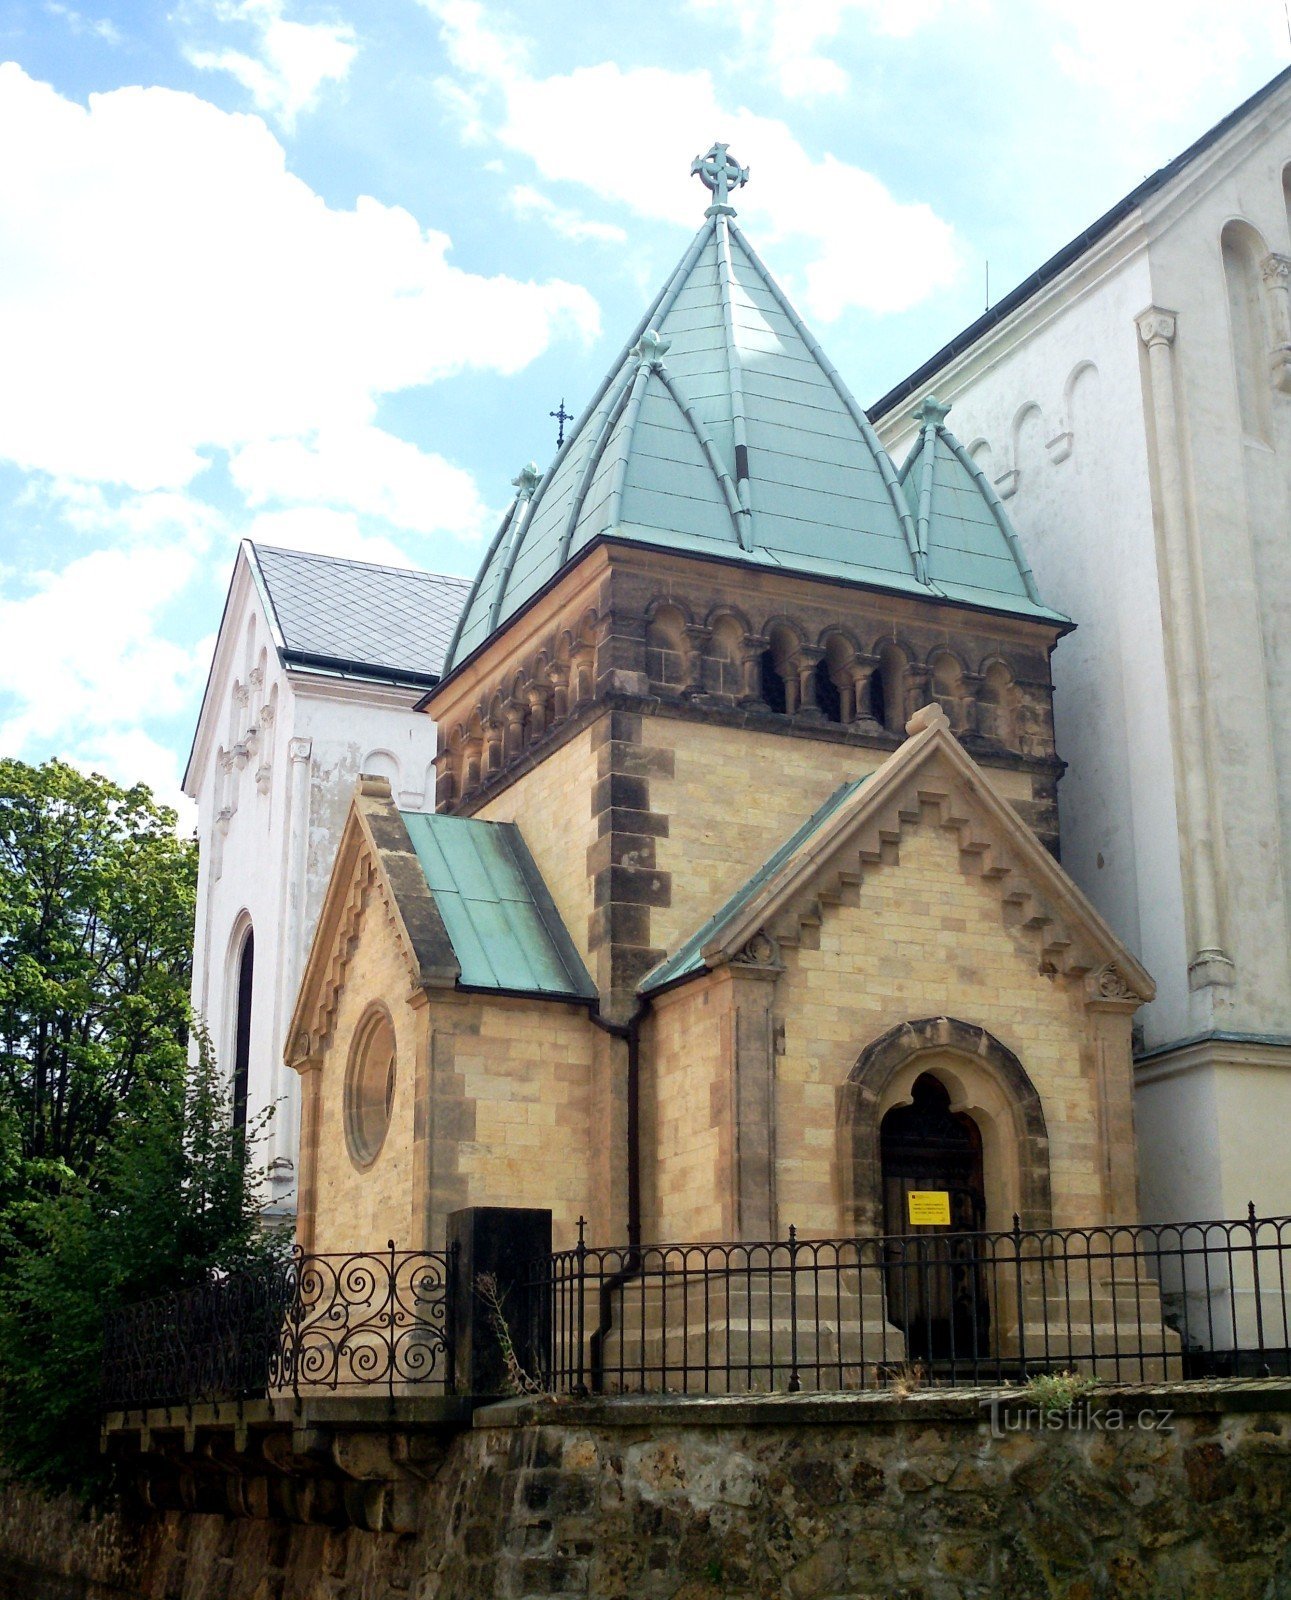 1904 年的附属教堂